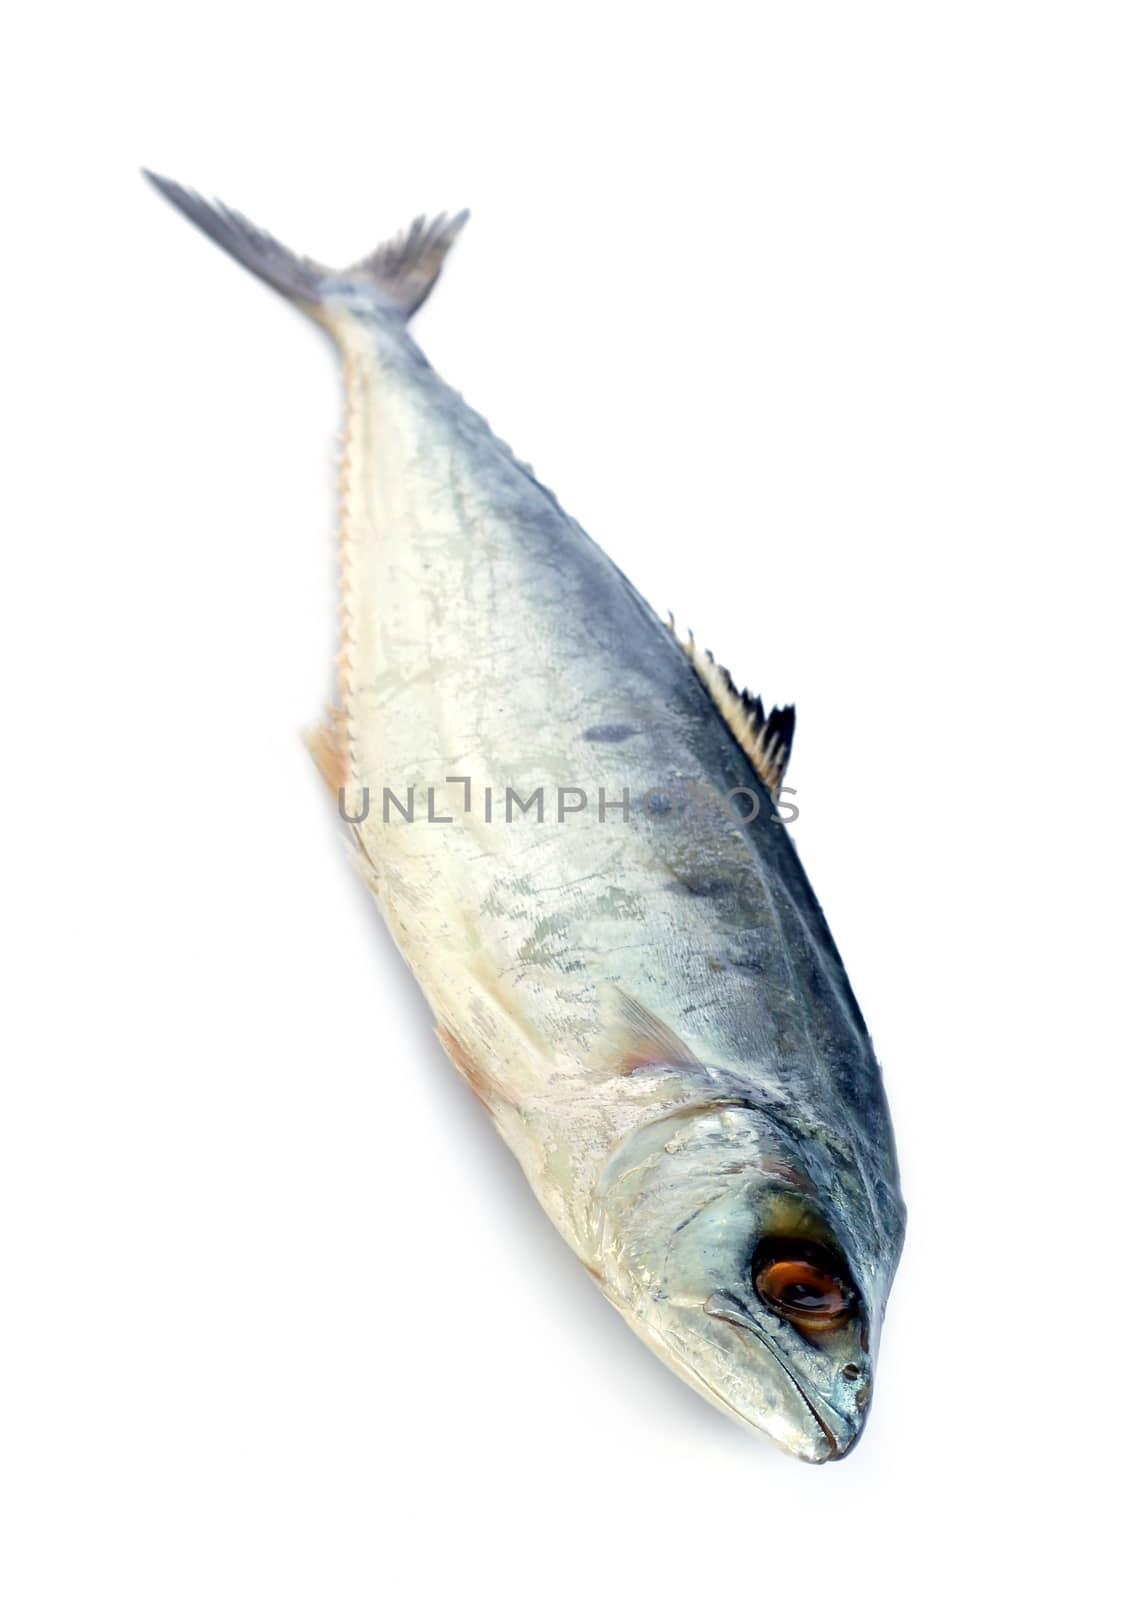 Image of fresh mackerel fish isolated on white background. by yod67